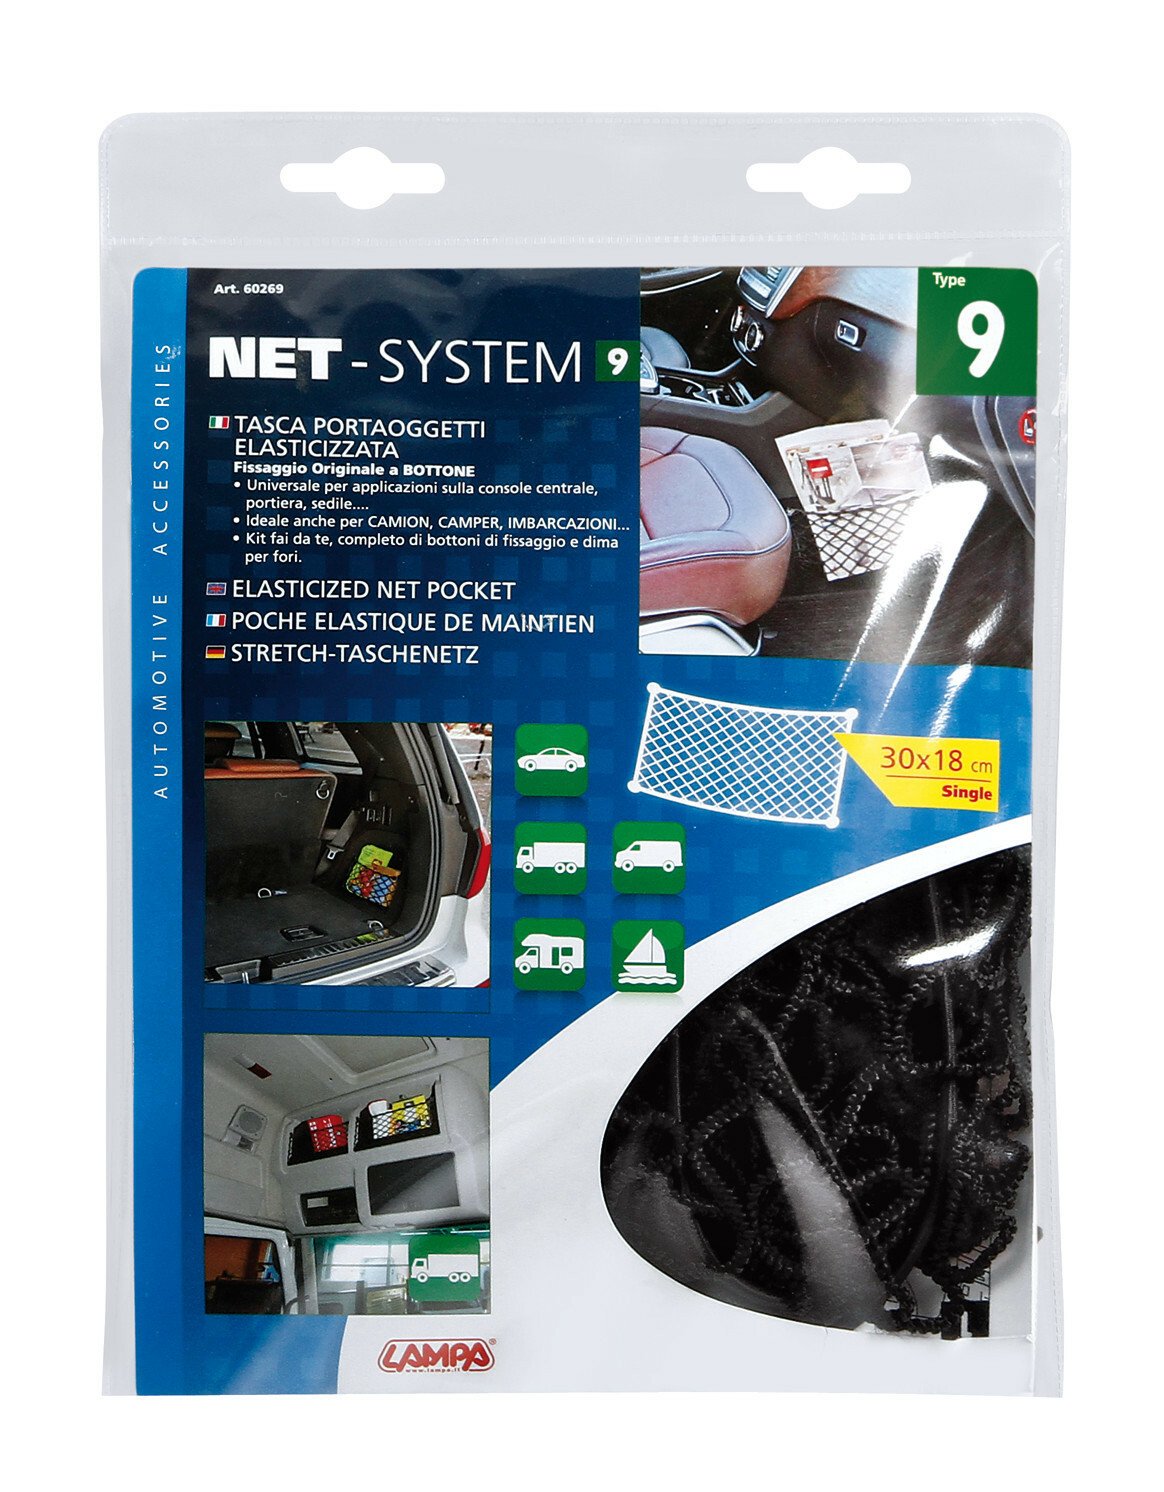 Net-System-9, rugalmas hálós zseb - 30x18cm thumb